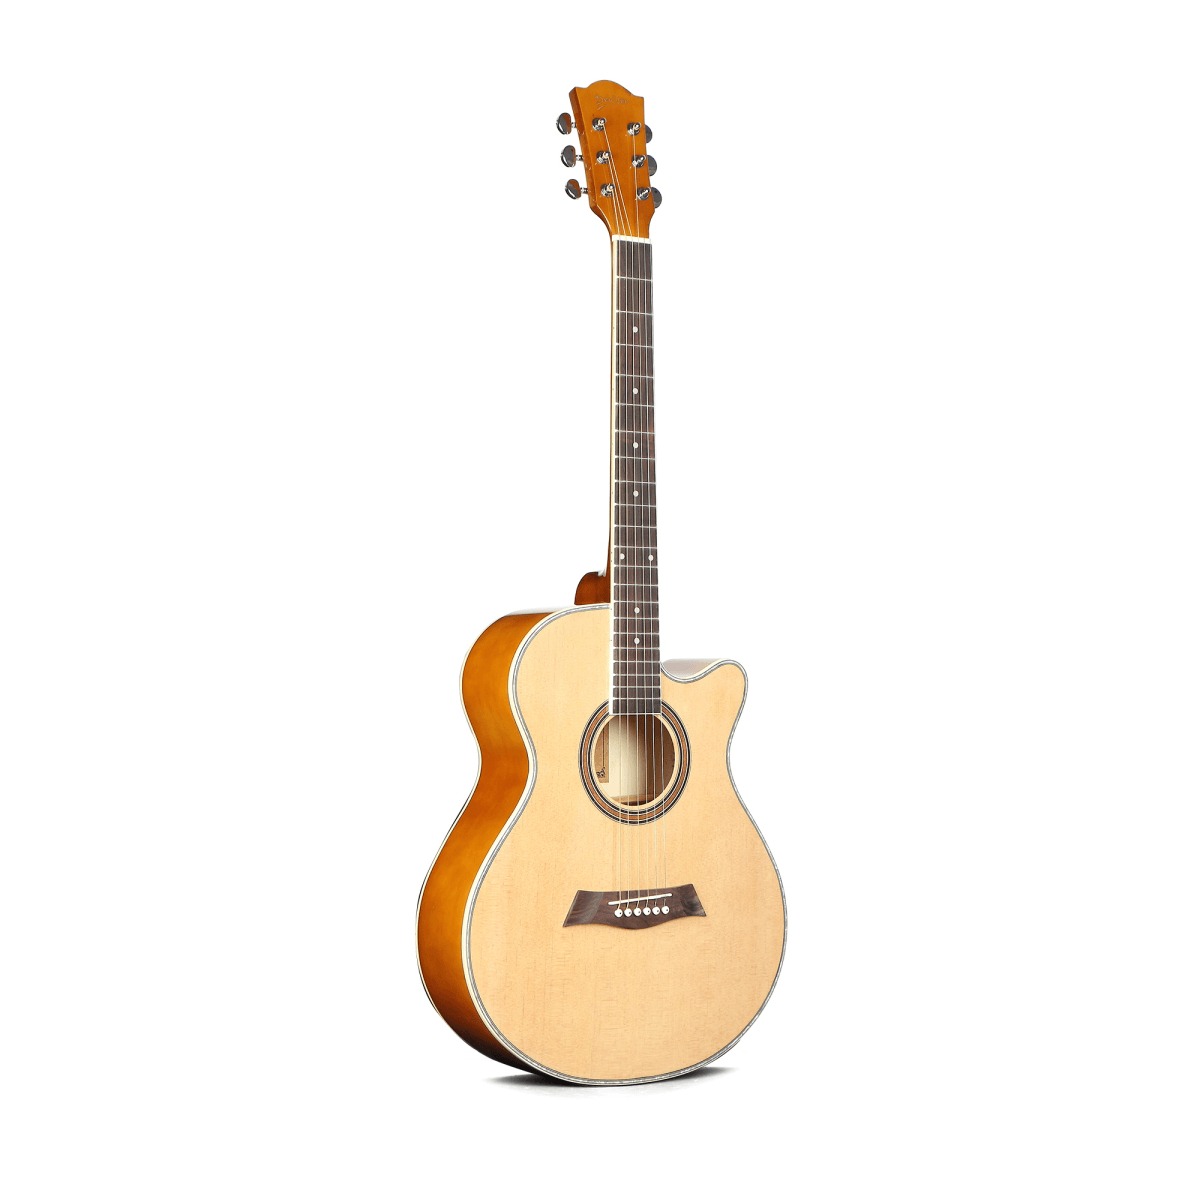 Акустические гитары Caravan K-706 N гитара акустическая дерево 97см с вырезом